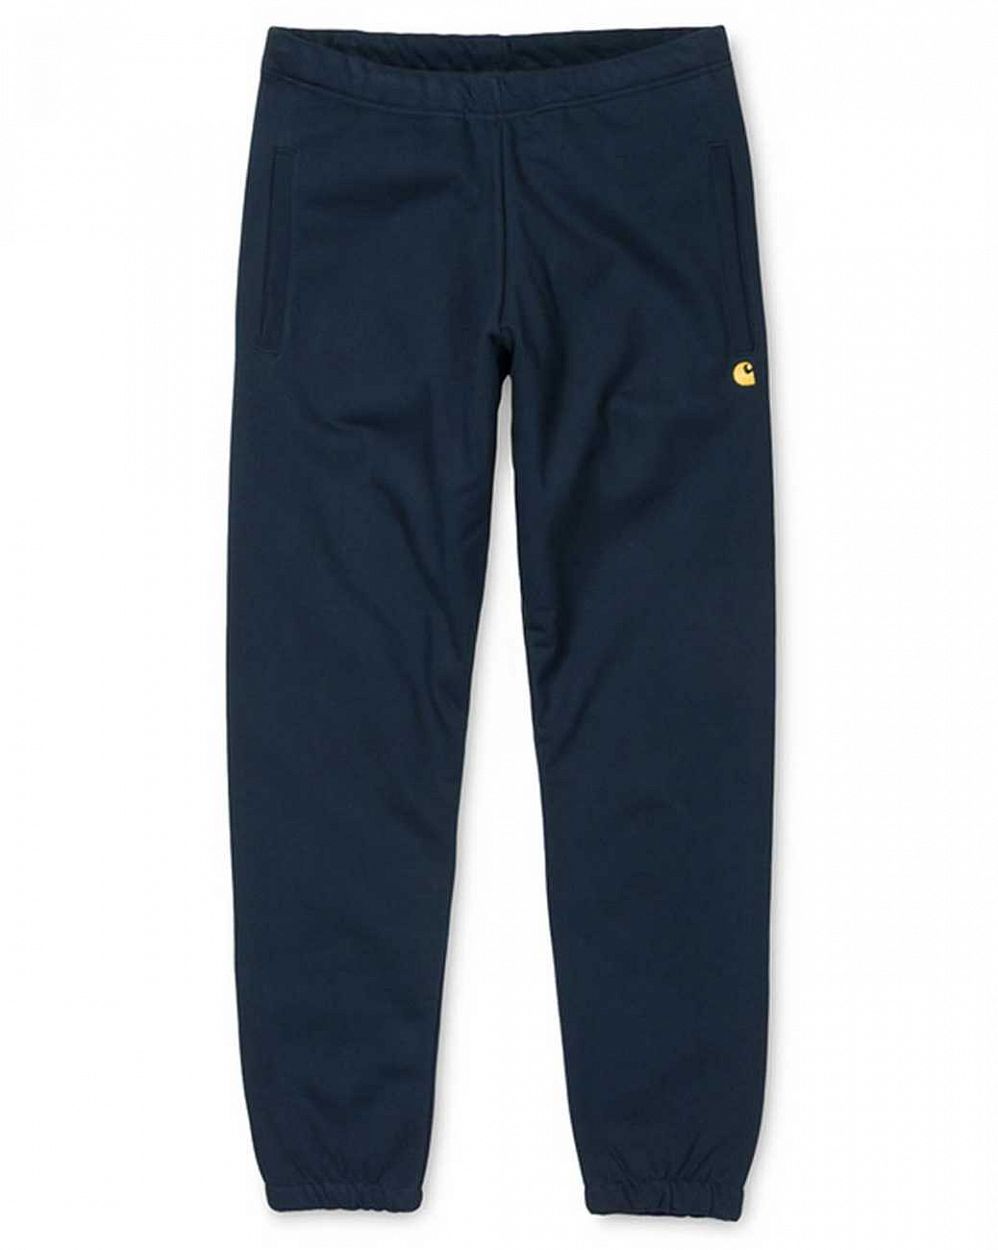 Спортивные штаны на резинке Carhartt WIP Chase Sweat Pant Navy отзывы